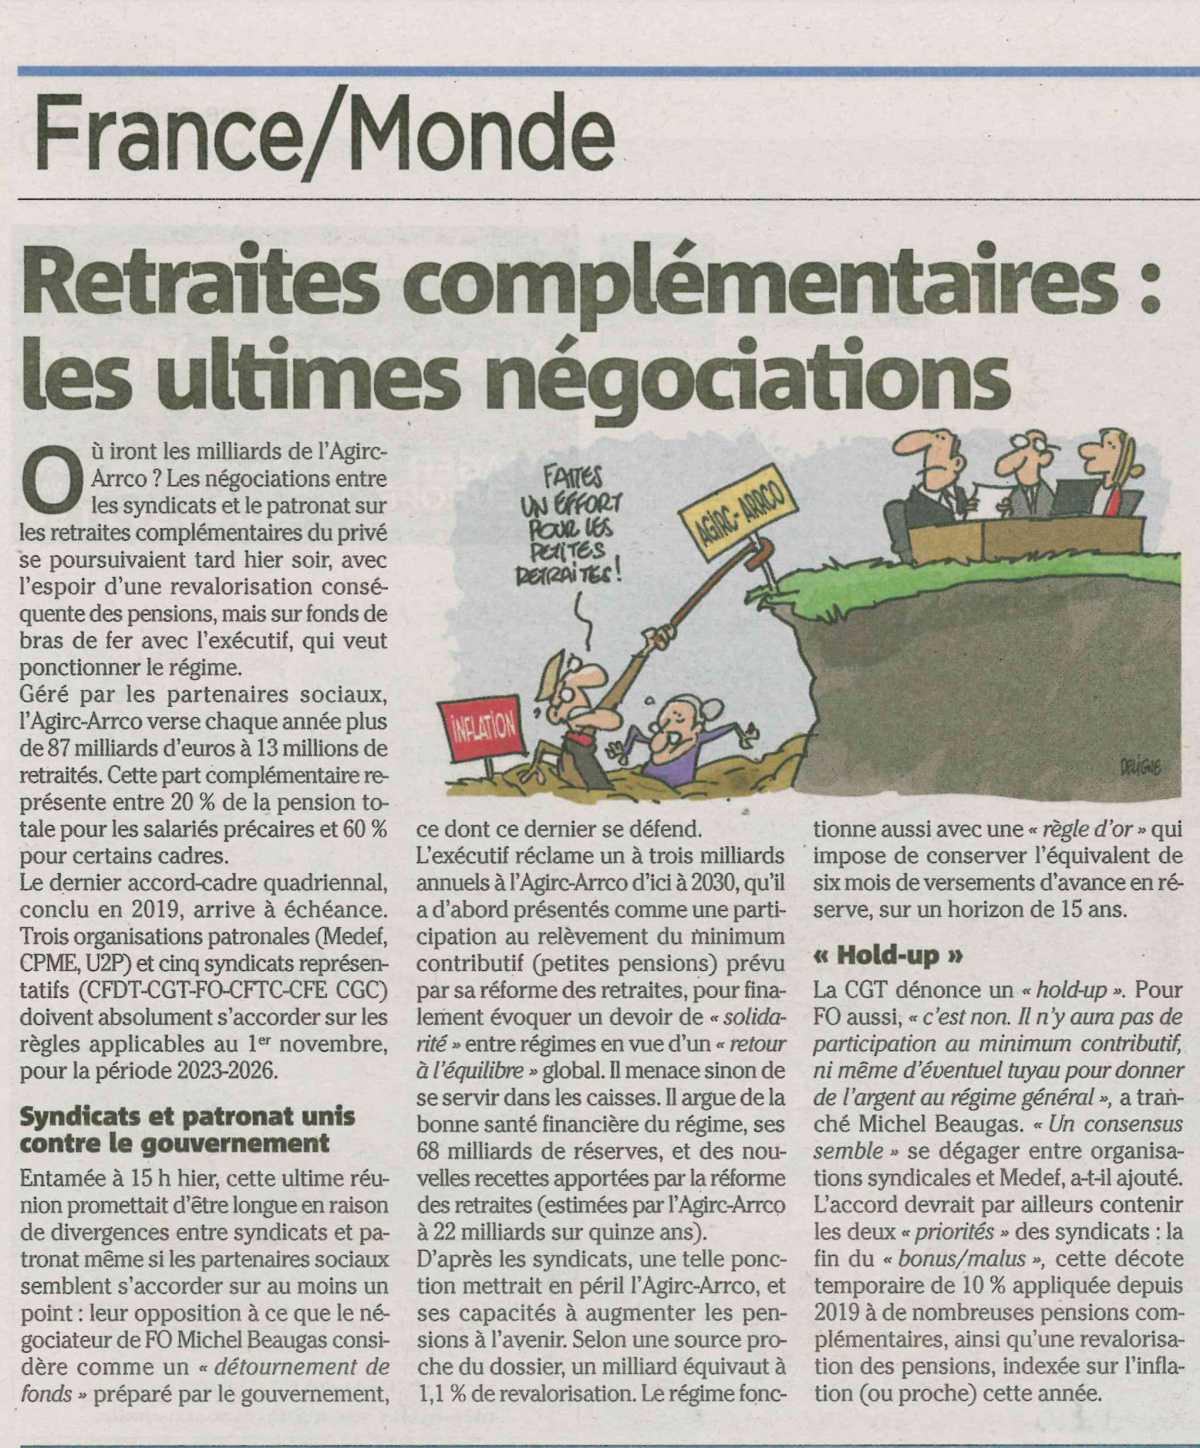  FRANCE Retraites complémentaires Les ultimes négociations